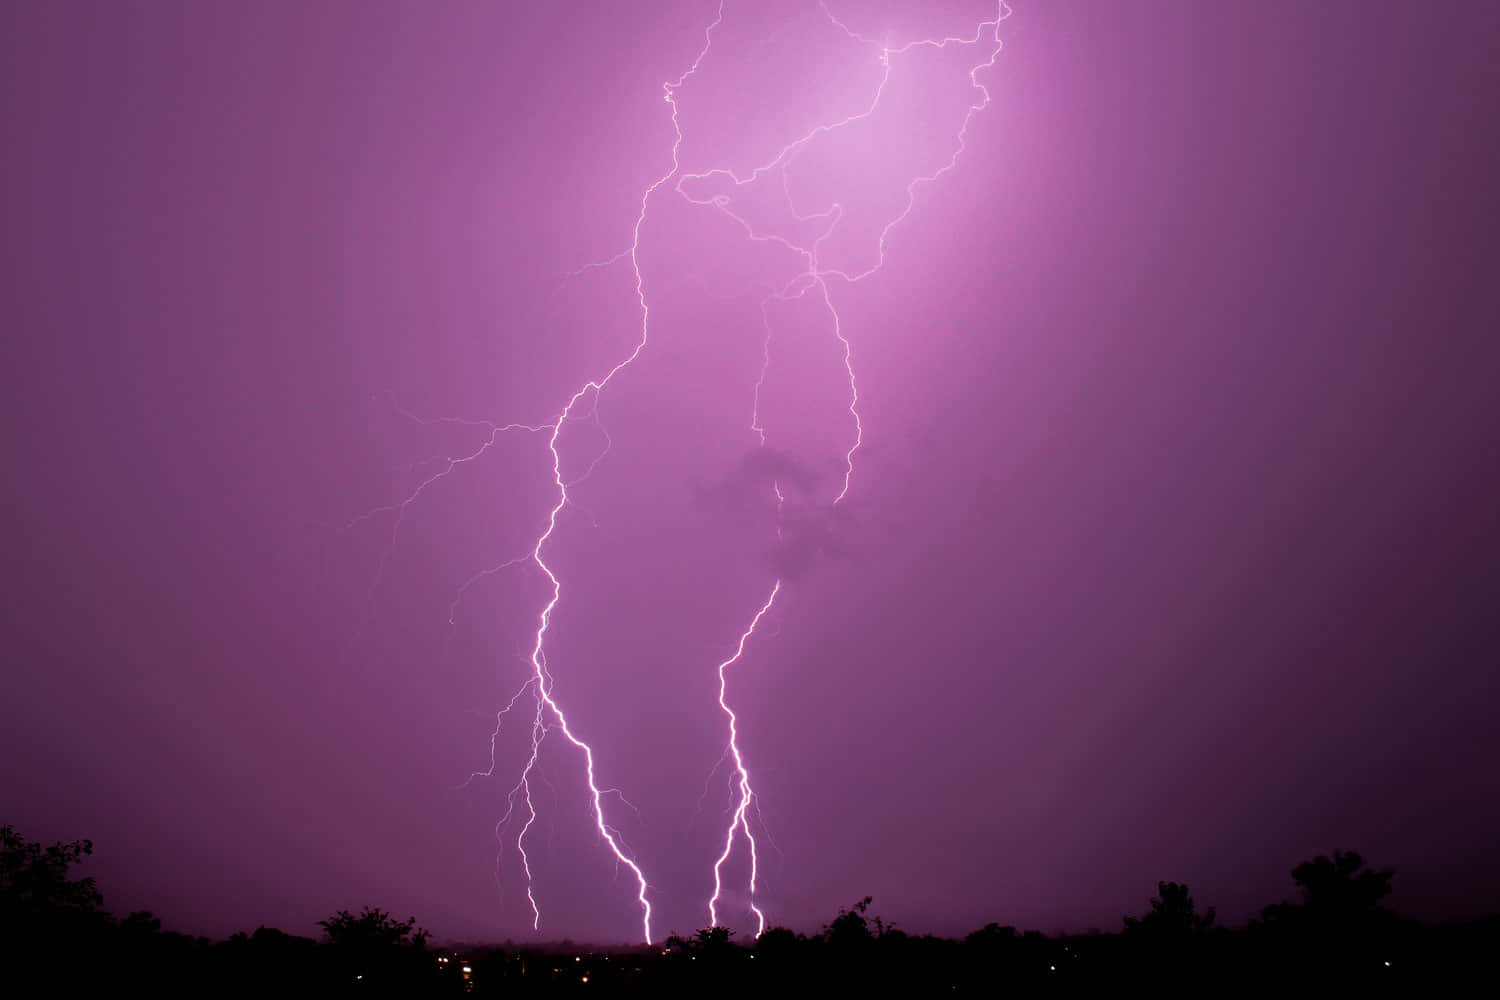 Striking Lightning Illuminating the Dark Sky